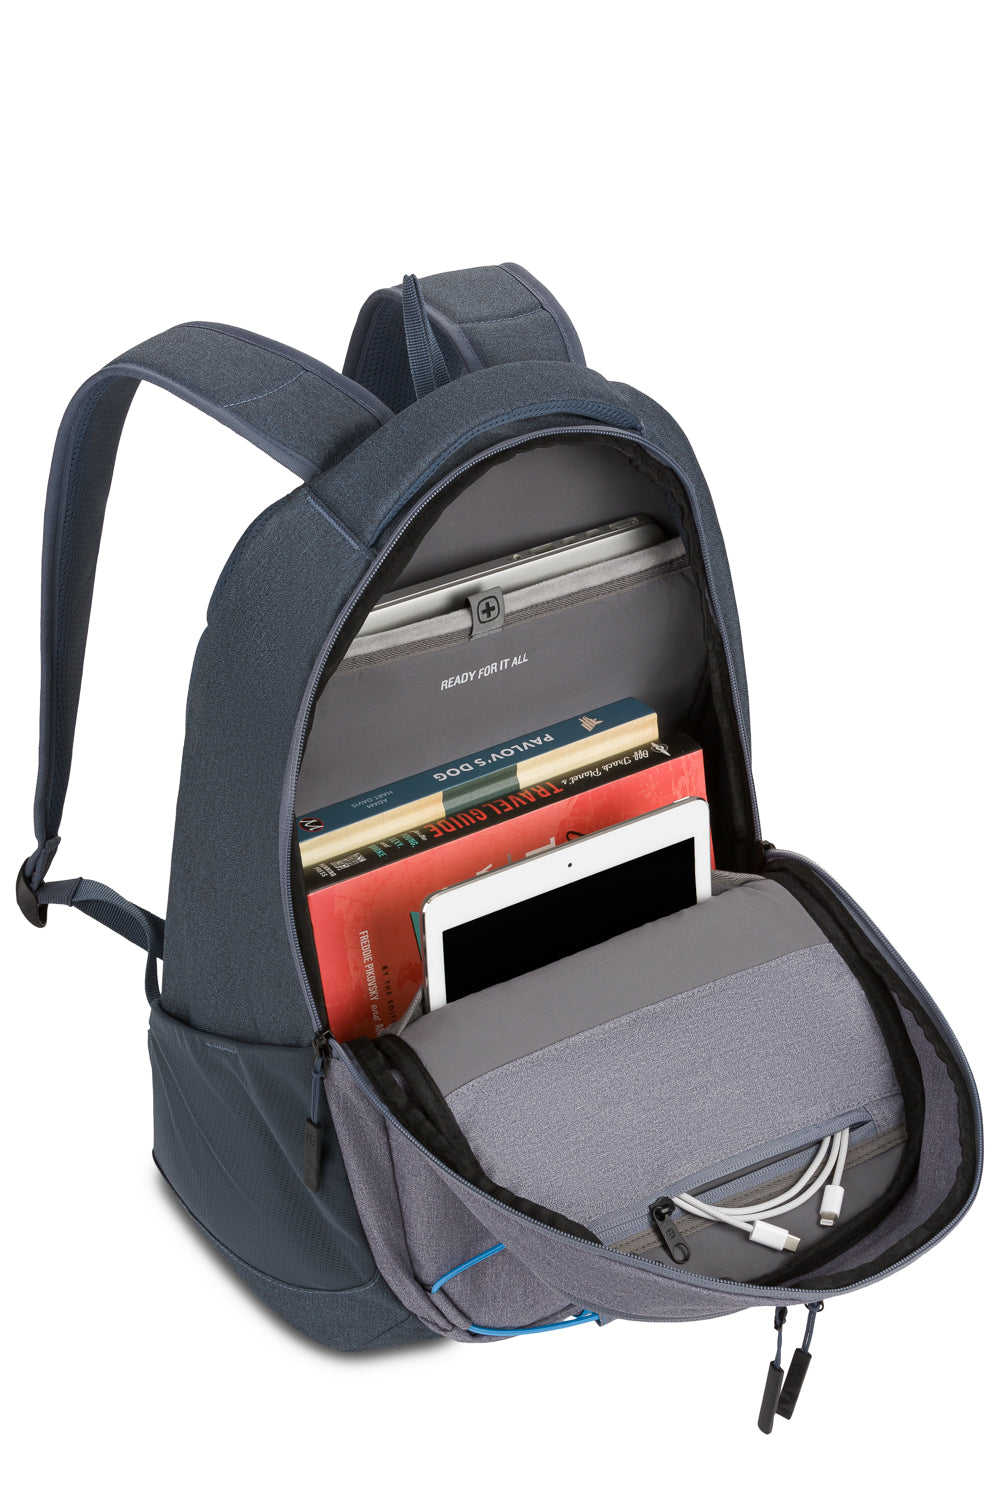 SwissGear 8175 16” Laptop Backpack